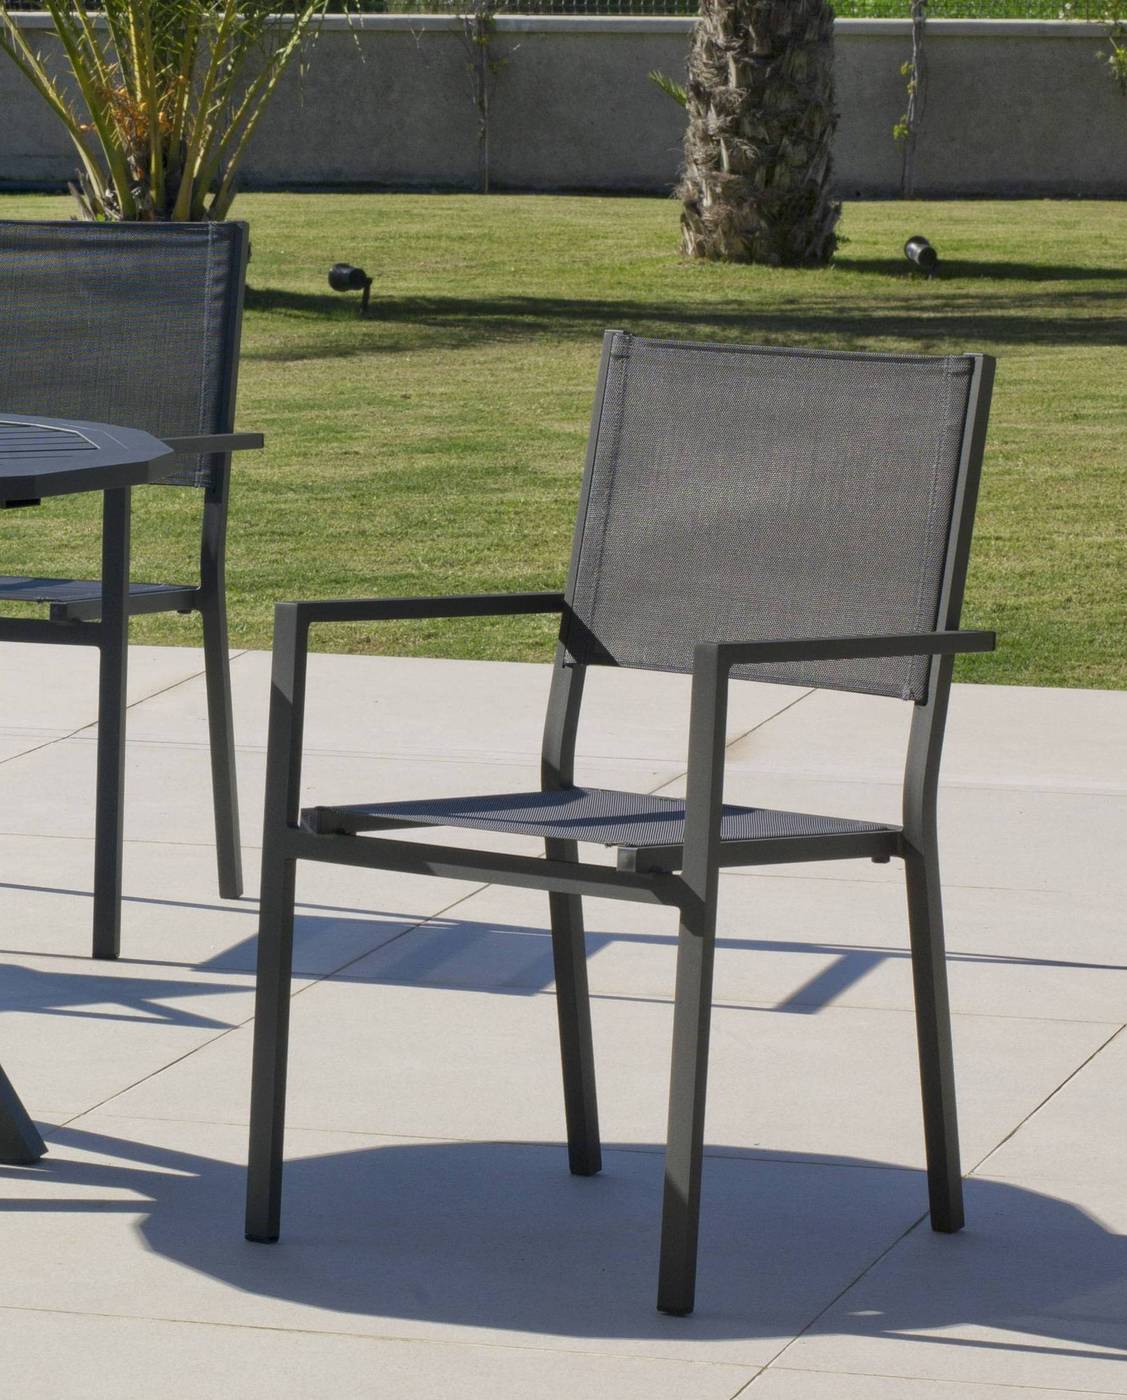 Set Aluminio Melea-Córcega 80-4 - Conjunto aluminio para jardín: Mesa cuadrada de 80 cm. + 4 sillones de aluminio y textilen. Disponible en color blanco, plata y antracita.